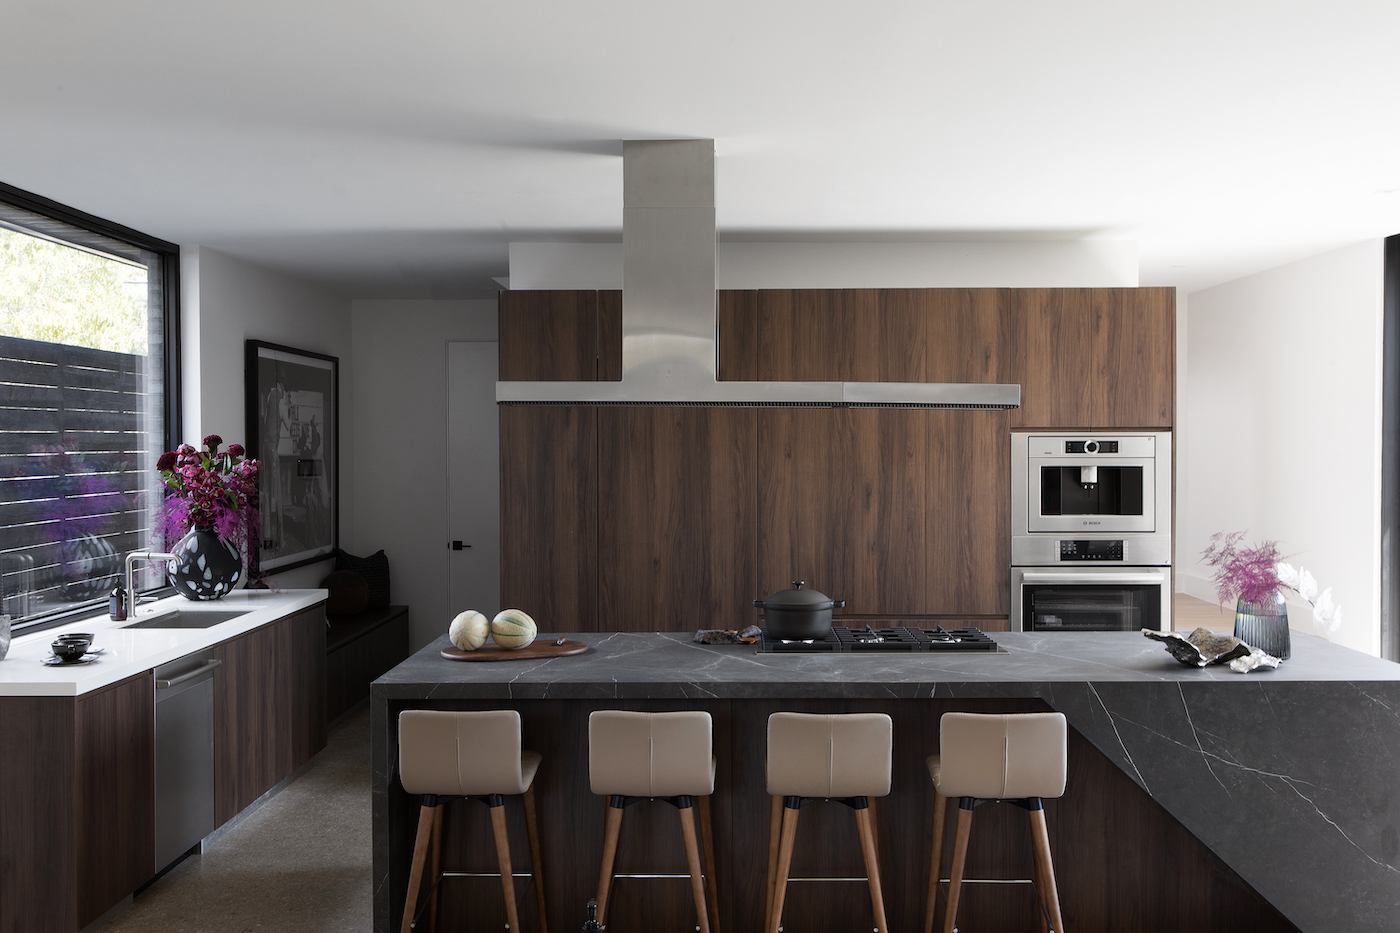 beyond-interior-design-high-chairs-black-kitchen-island